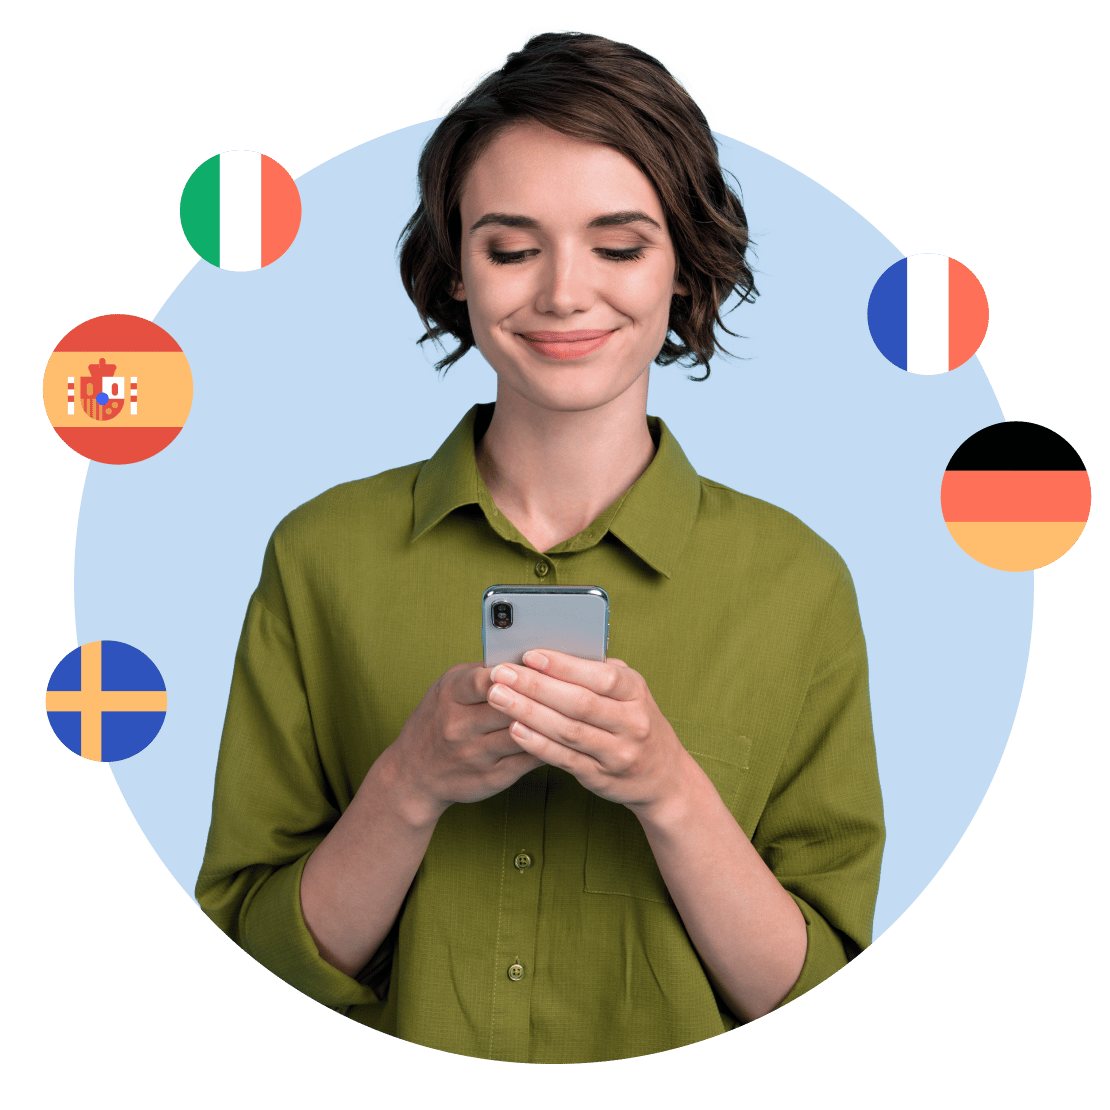 使用 Duolingo 愉快學習了多種語言，借助 NordVPN 提升隱私權的女性。